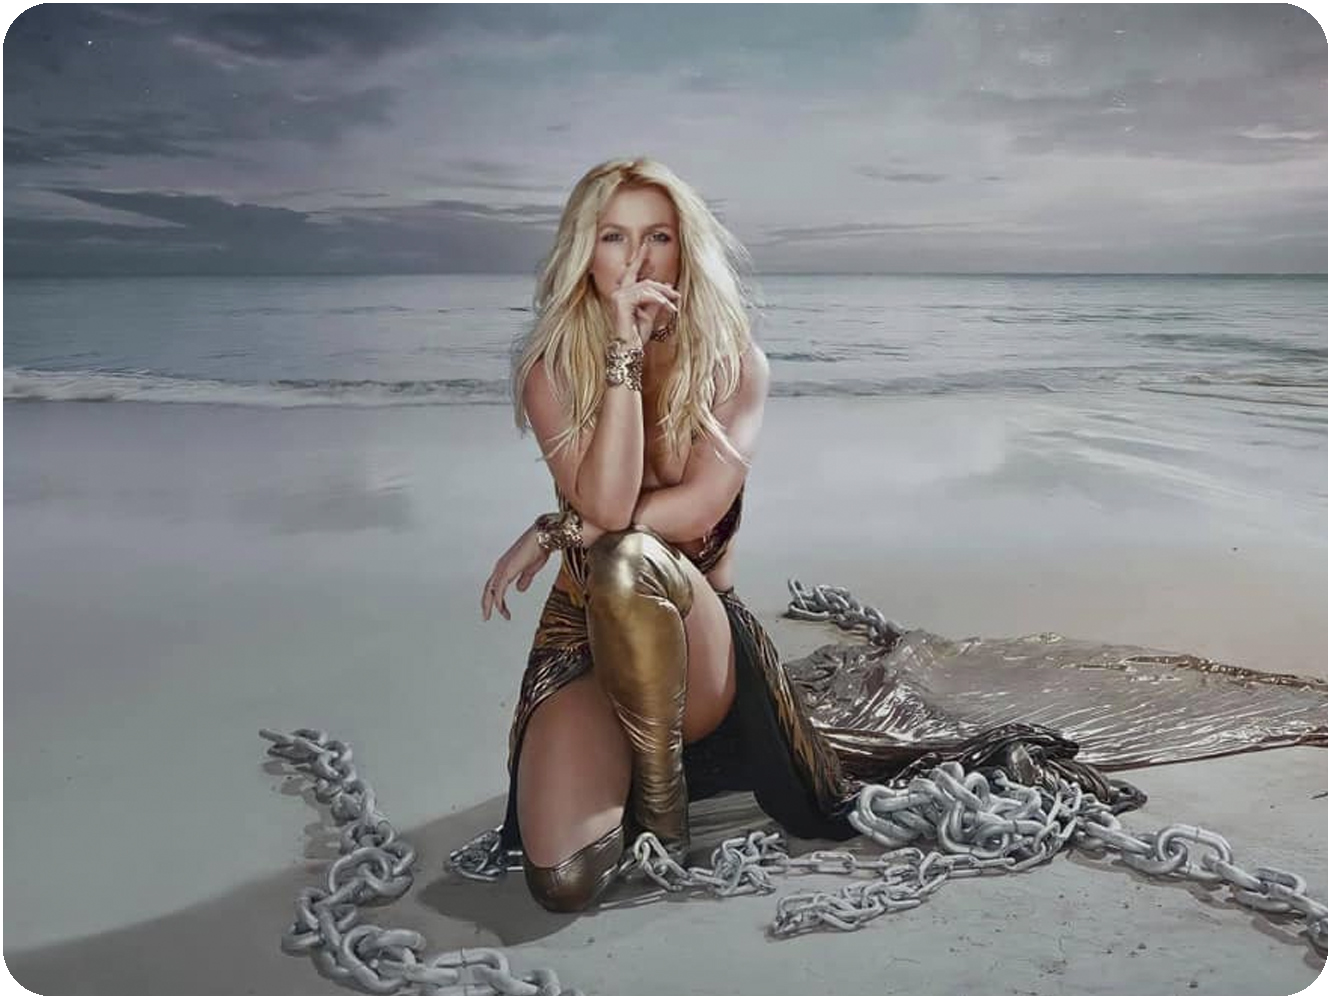  La afamada perfumista Britney Spears pierde otra batalla contra su padre y se niega a volver a actuar